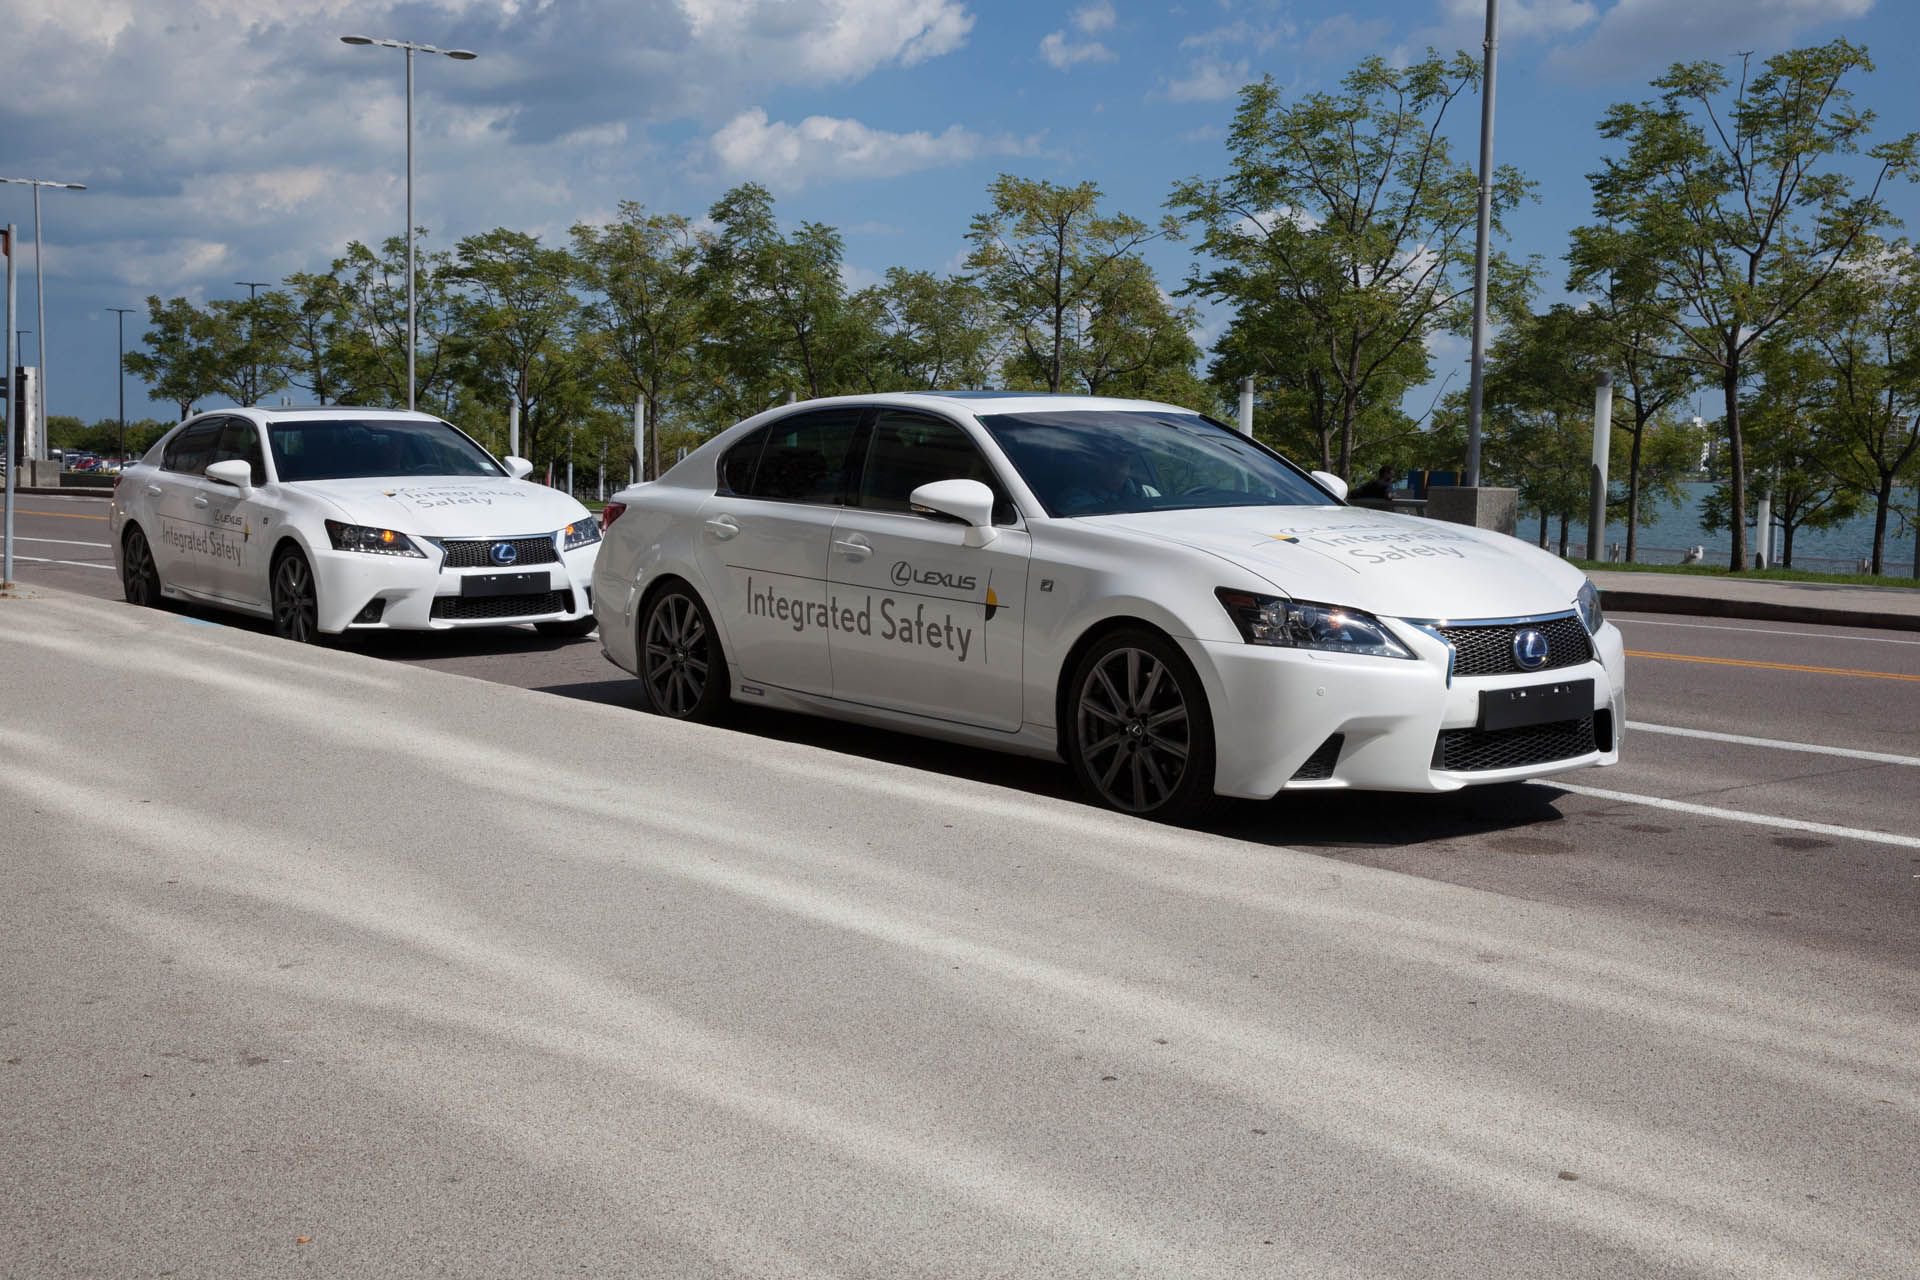 Berita, Fasilitas Autonomous Car Track Michigan: Toyota Bangun Trek Untuk Tes Mobil Otonom di Michigan